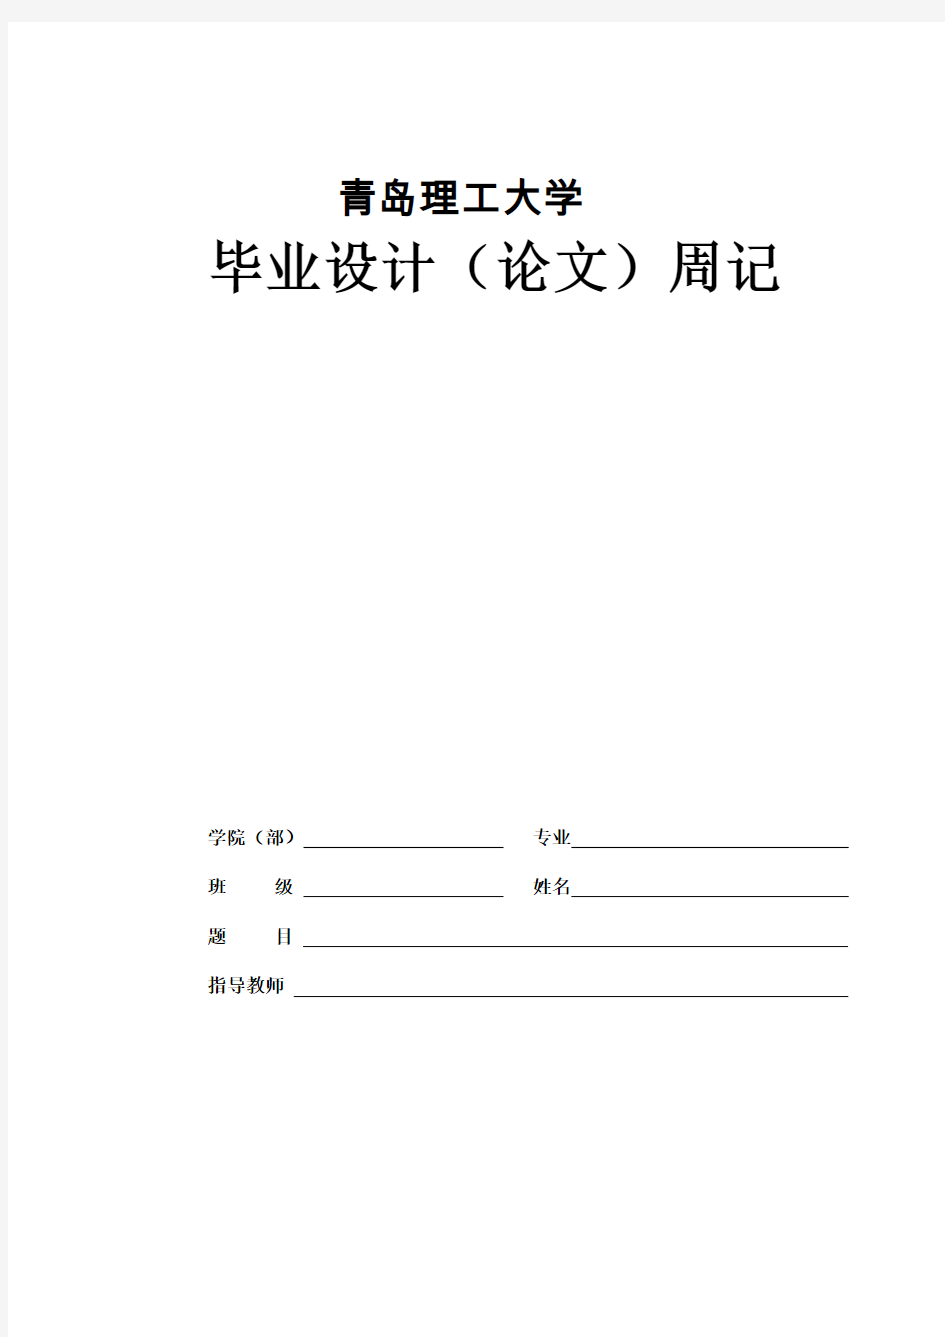 青岛理工大学毕业设计周记-模版